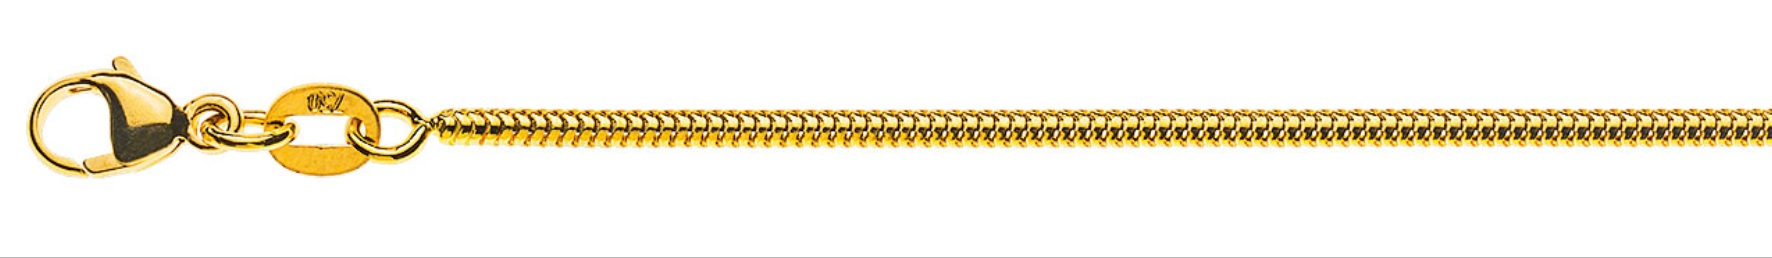 AURONOS Prestige Halskette Gelbgold 18K Schlangenkette 50cm 1.6mm